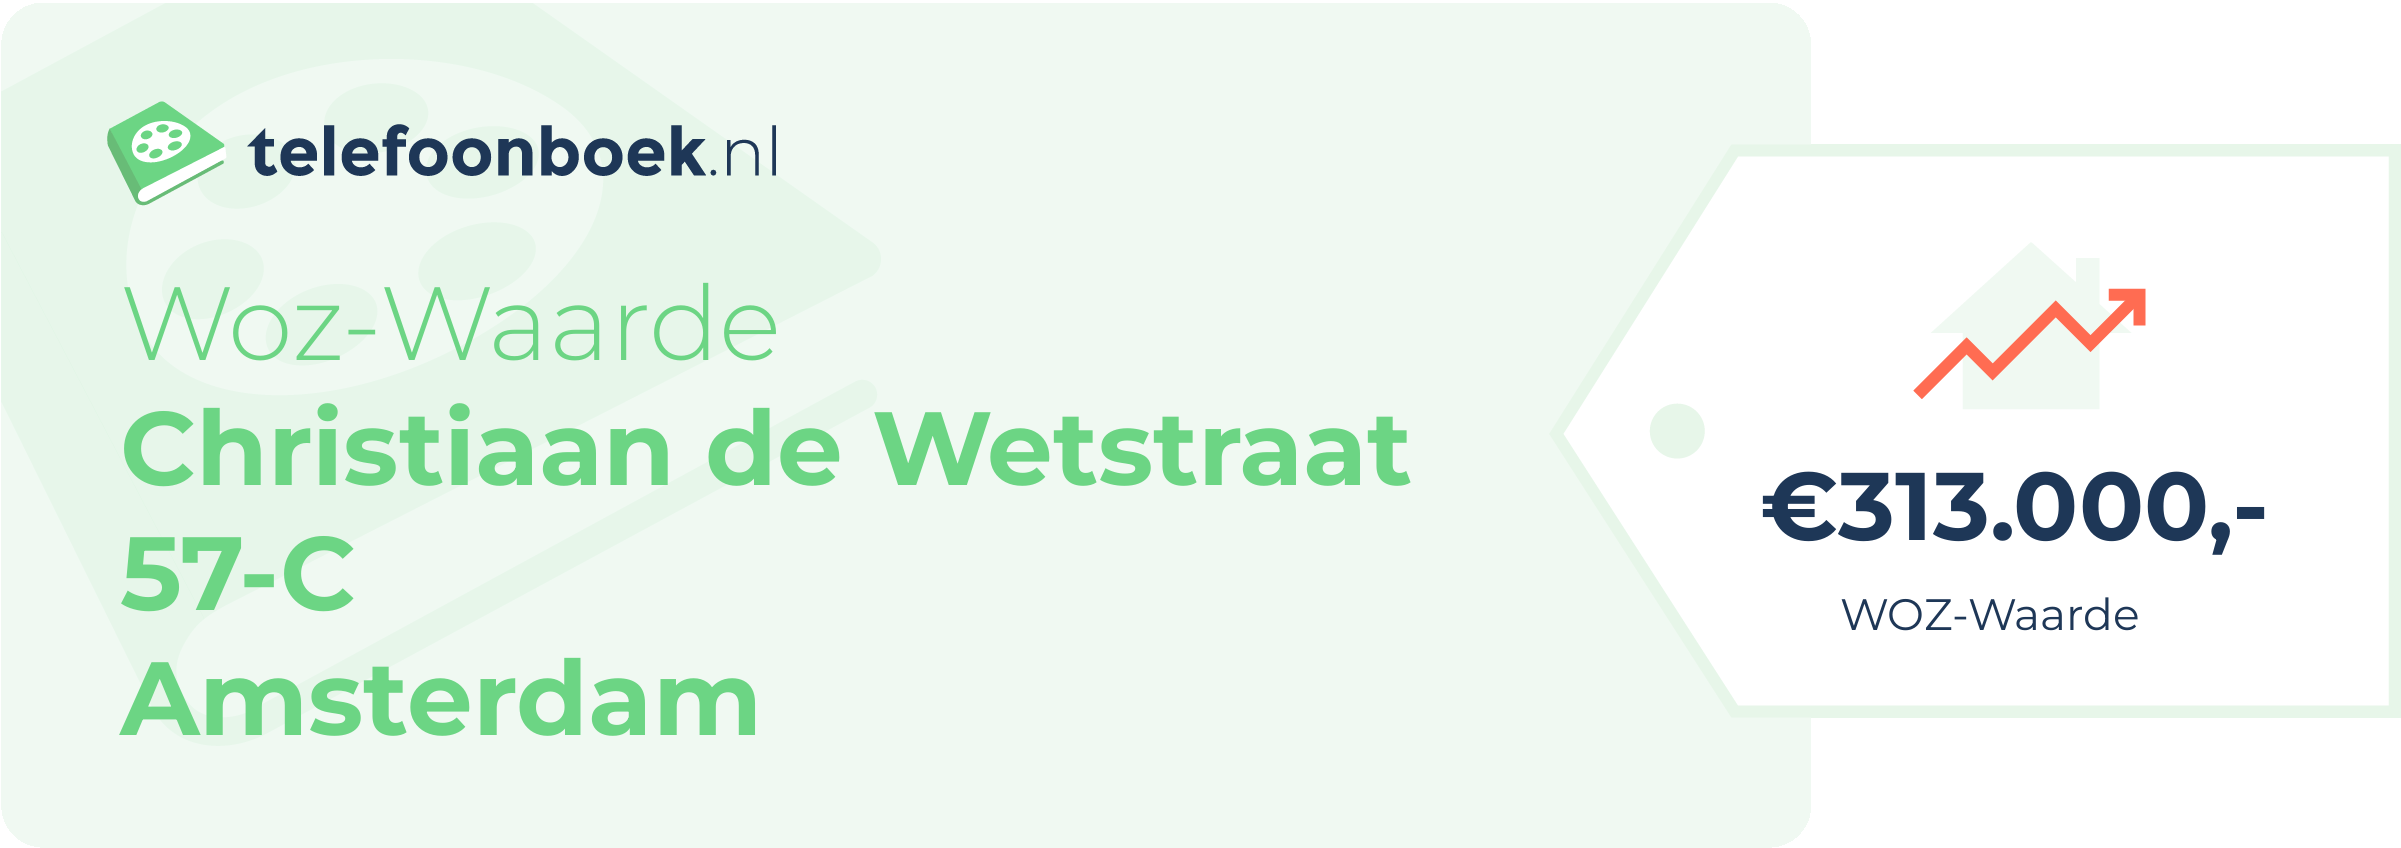 WOZ-waarde Christiaan De Wetstraat 57-C Amsterdam